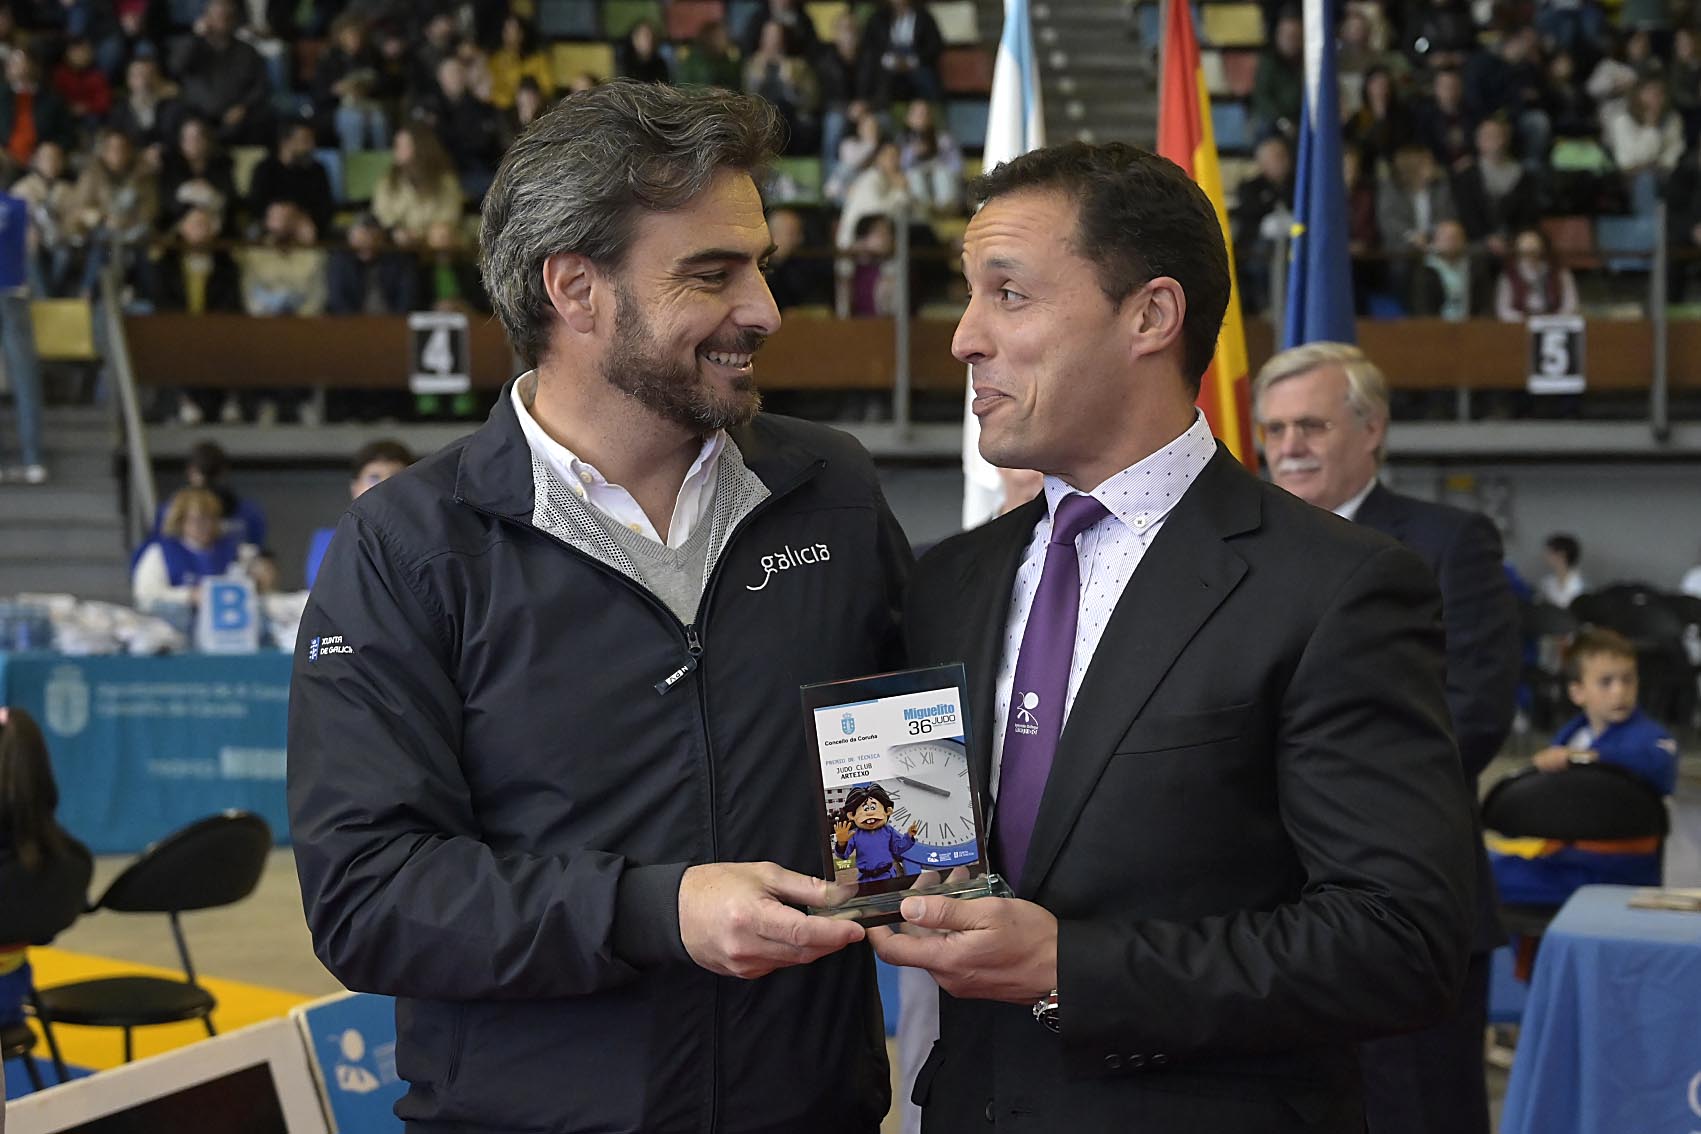 Image 3 of article Diego Calvo recolle o premio concedido á Xunta na 36ª edición do Trofeo de judo Miguelito